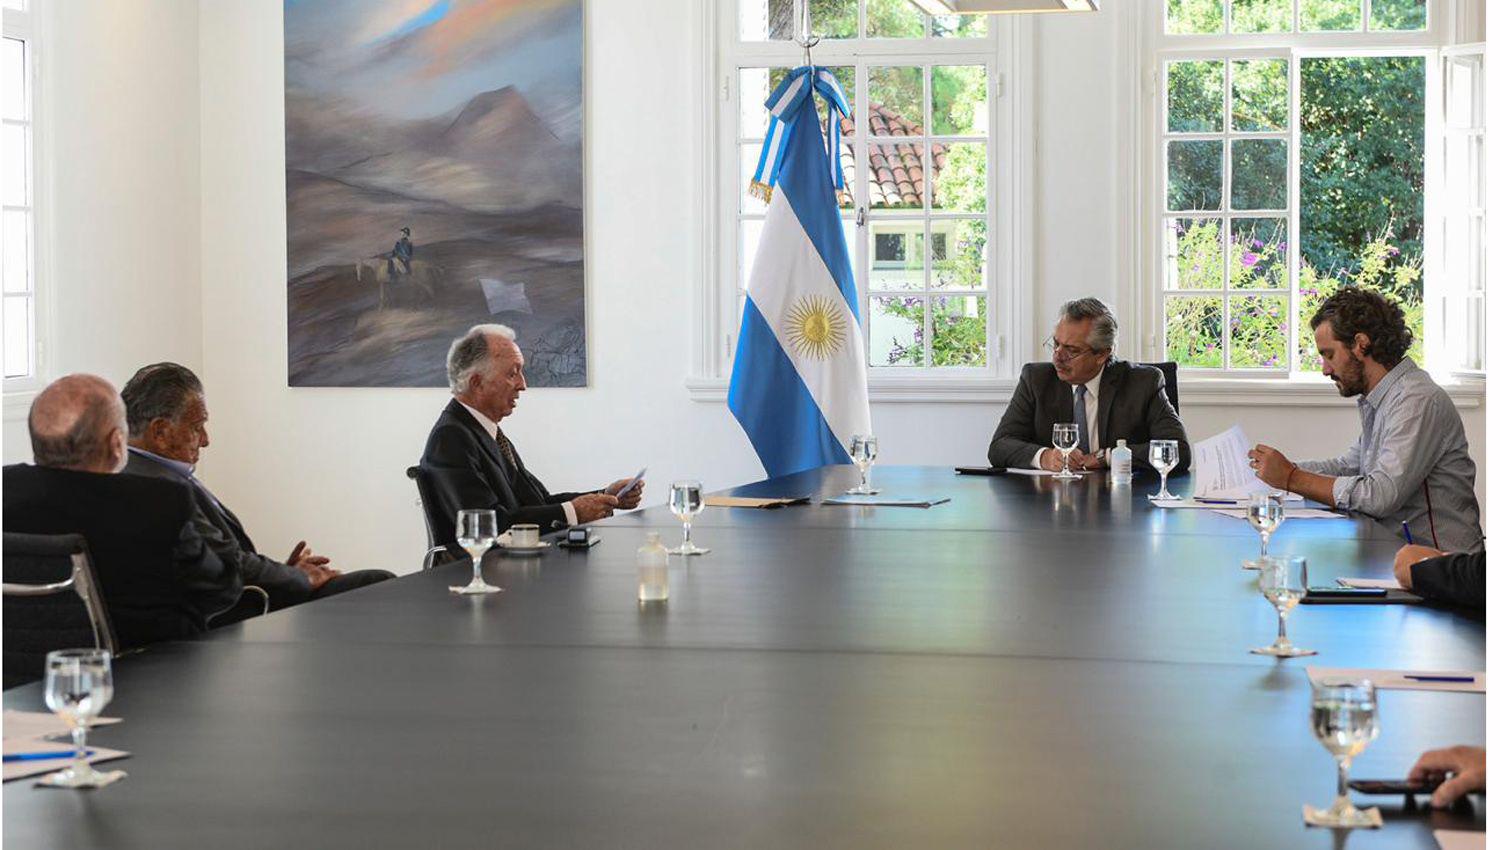 El Presidente recibioacute a la Caacutemara Argentina de Comercio